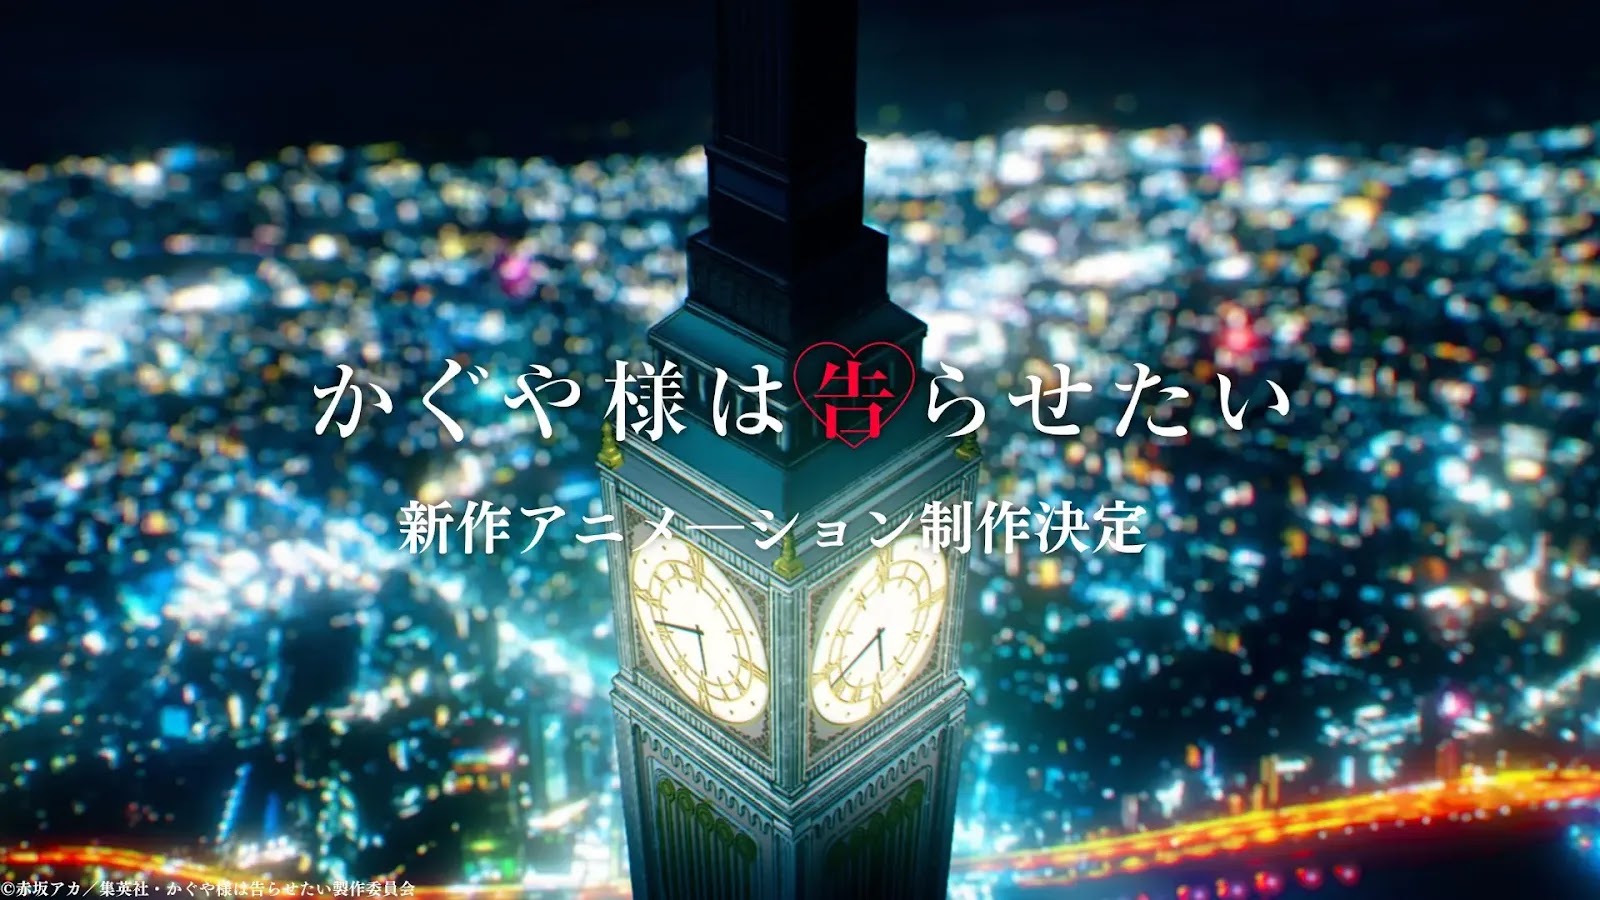 Kaguya-sama: Love is War nowy projekt anime